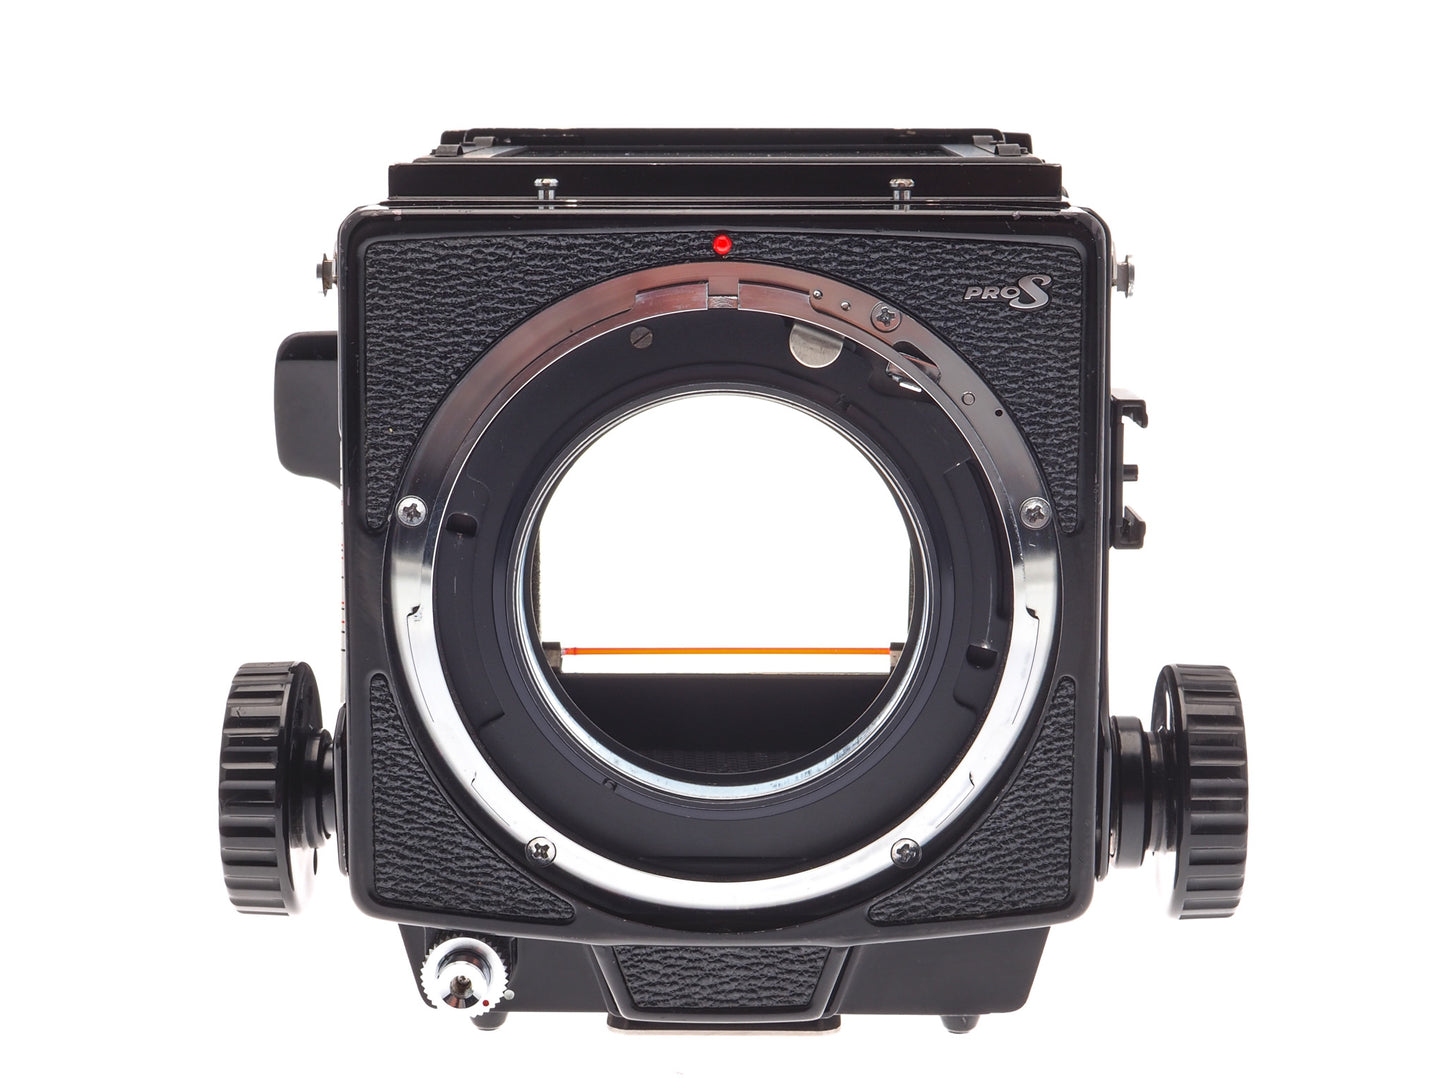 Mamiya RB67 Pro-S + 120 Pro-S 6x7 Film Back + 127mm f3.8 Sekor C + Waist Level Finder